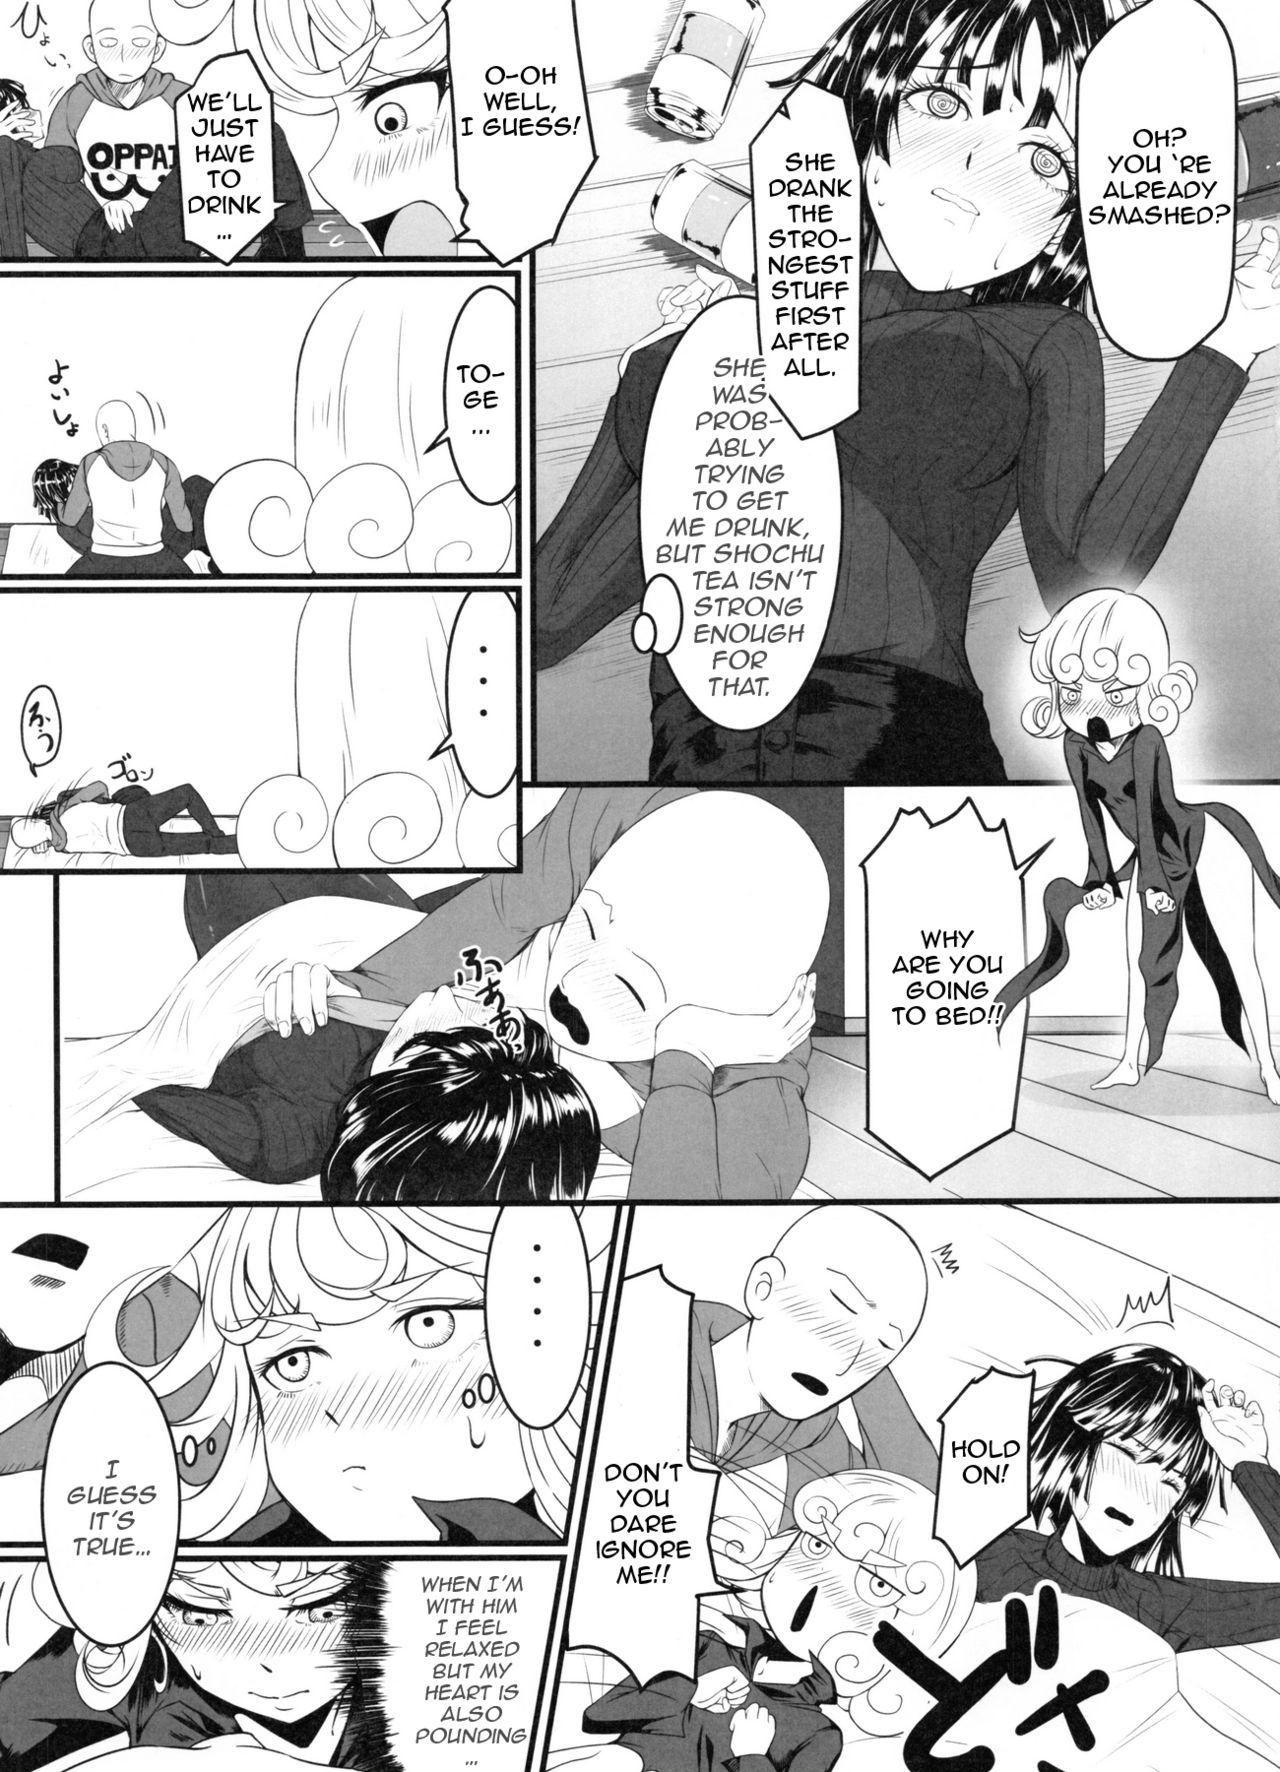 Squirters Dekoboko Love Sister 2-gekime! - One punch man Amateur Porn - Page 6